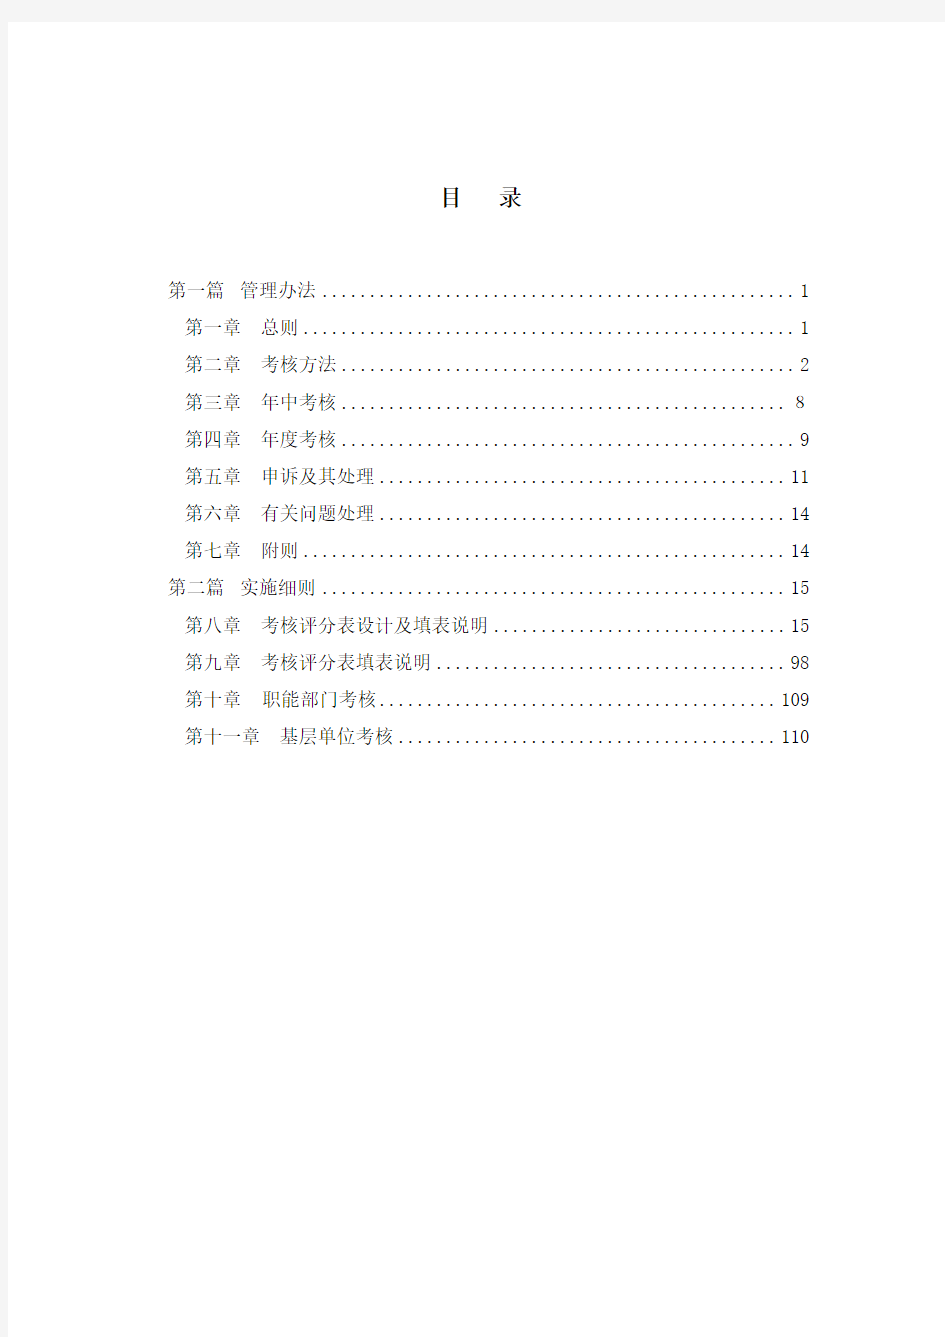 【咨询报告】北大纵横-北京航空材料研究院-绩效考核体系设计方案(doc112页)